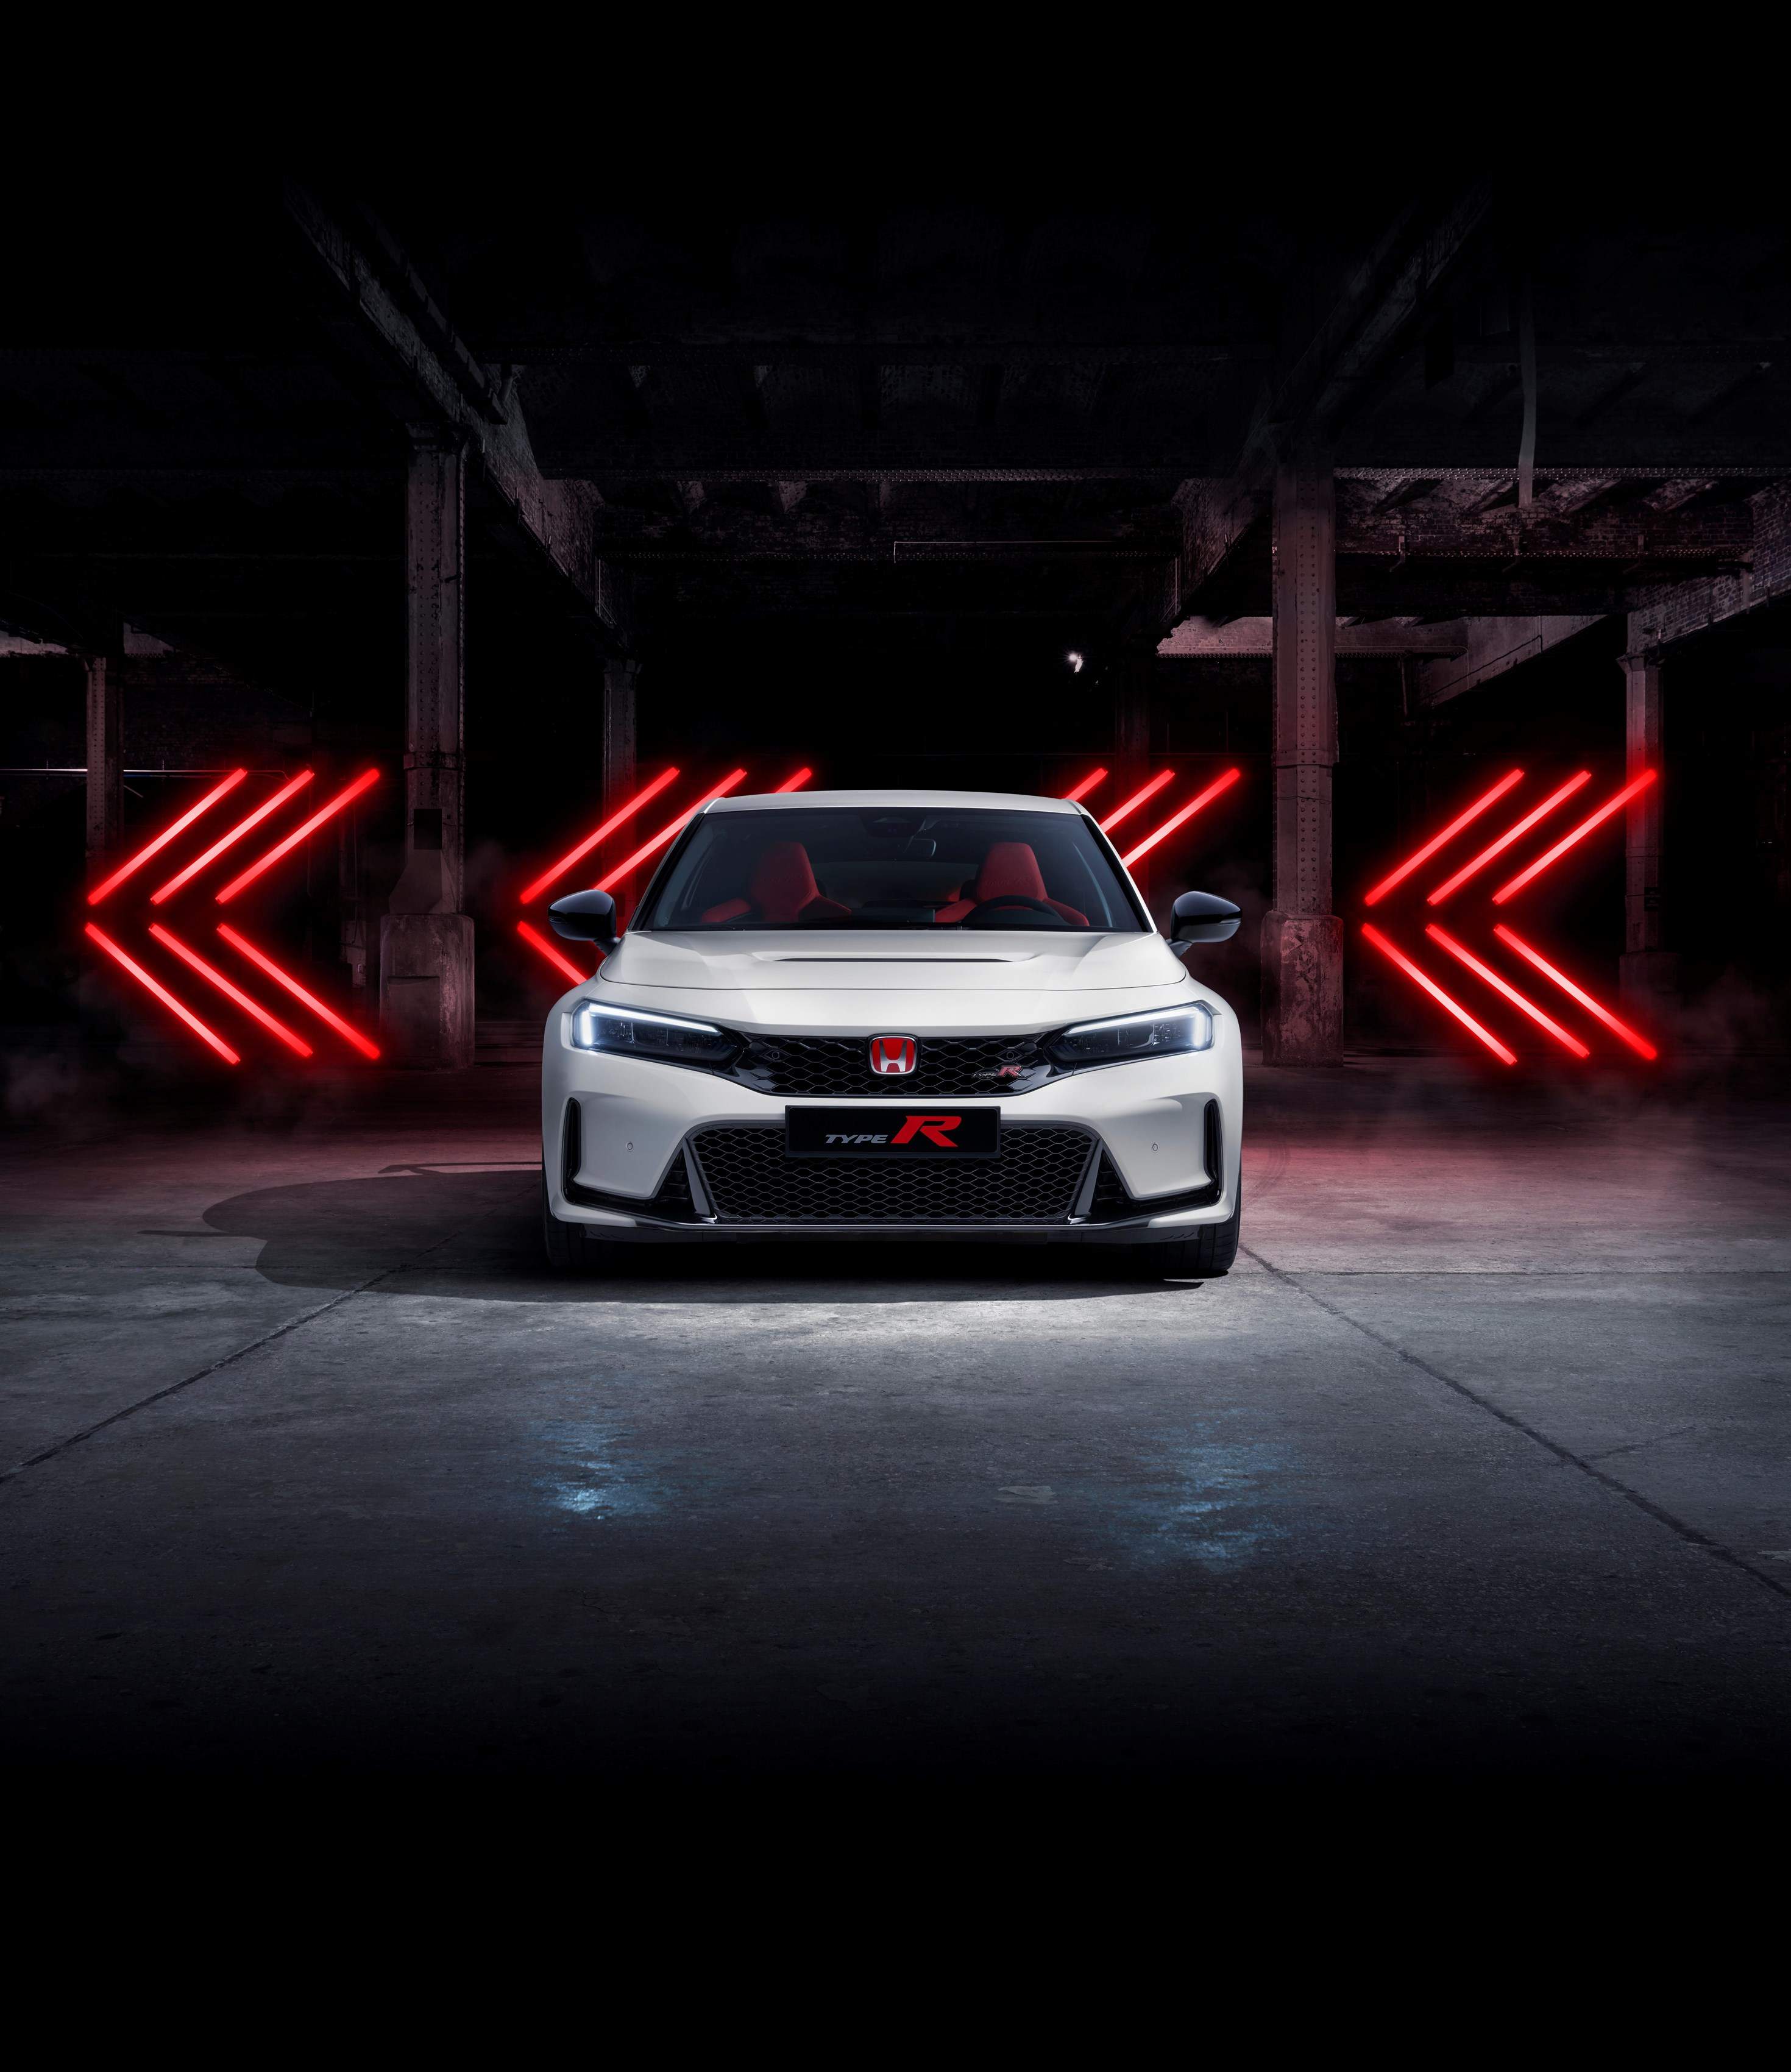 Der neue Honda Civic Type R ist eingetroffen